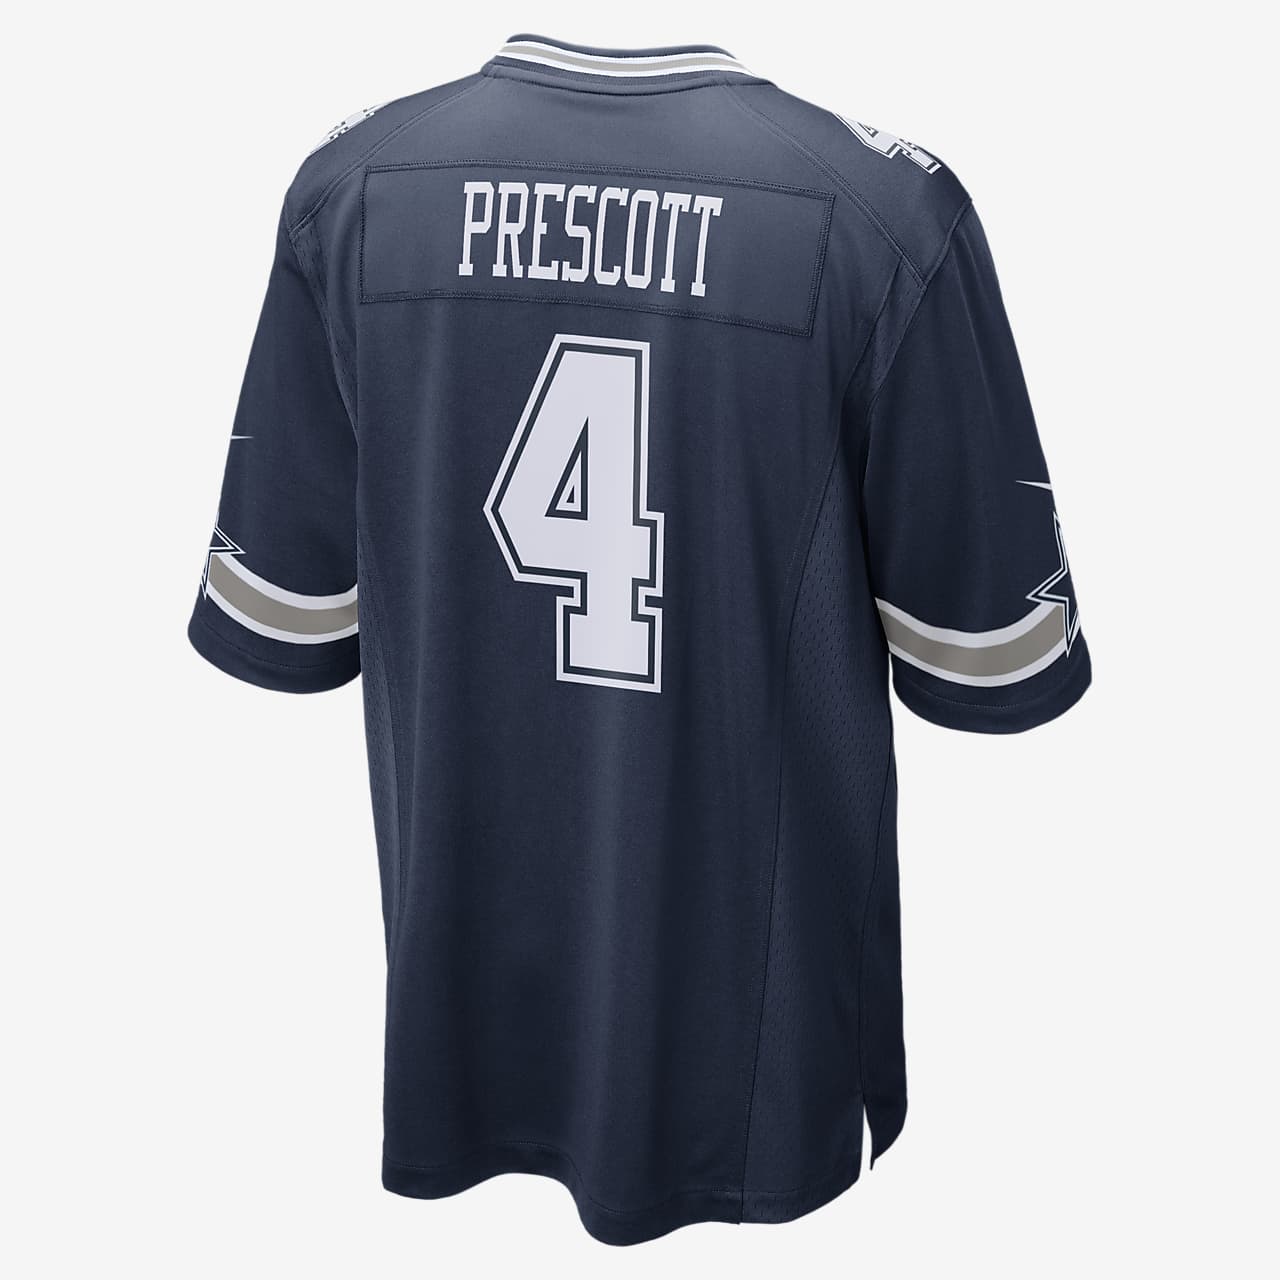 NFL Dallas Cowboys (Dak Prescott) Men's Football Game Jersey. Nike.com